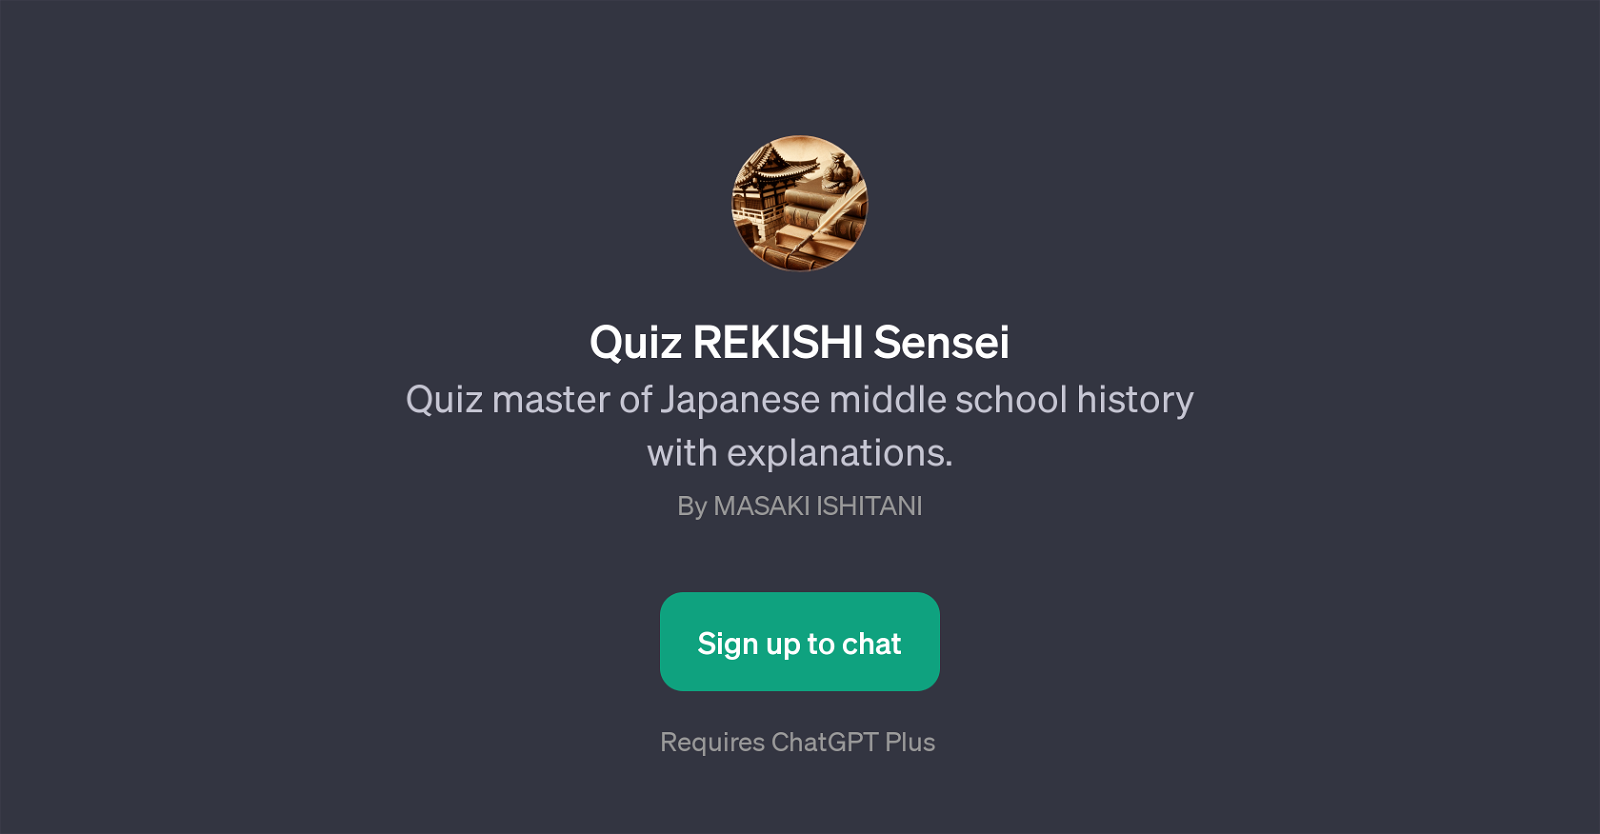 Quiz REKISHI Sensei website